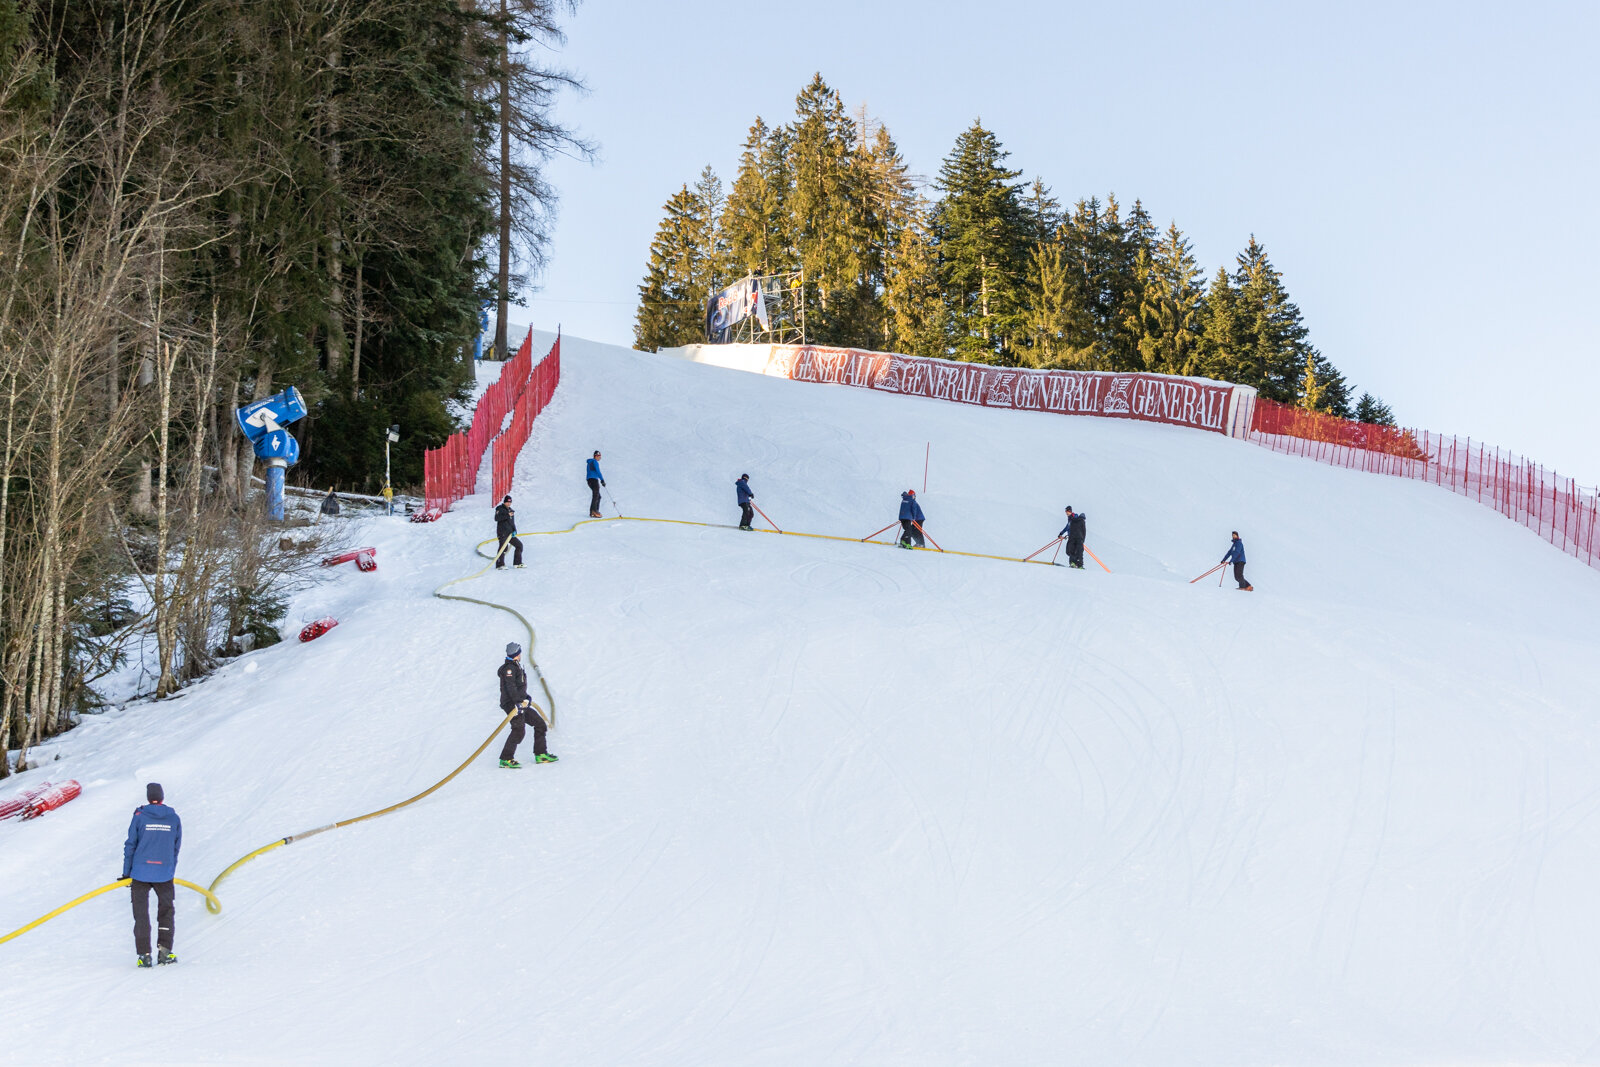 Hahnenkamm-Rennen Kitzbühel: már készülnek a hétvégi versenyekre